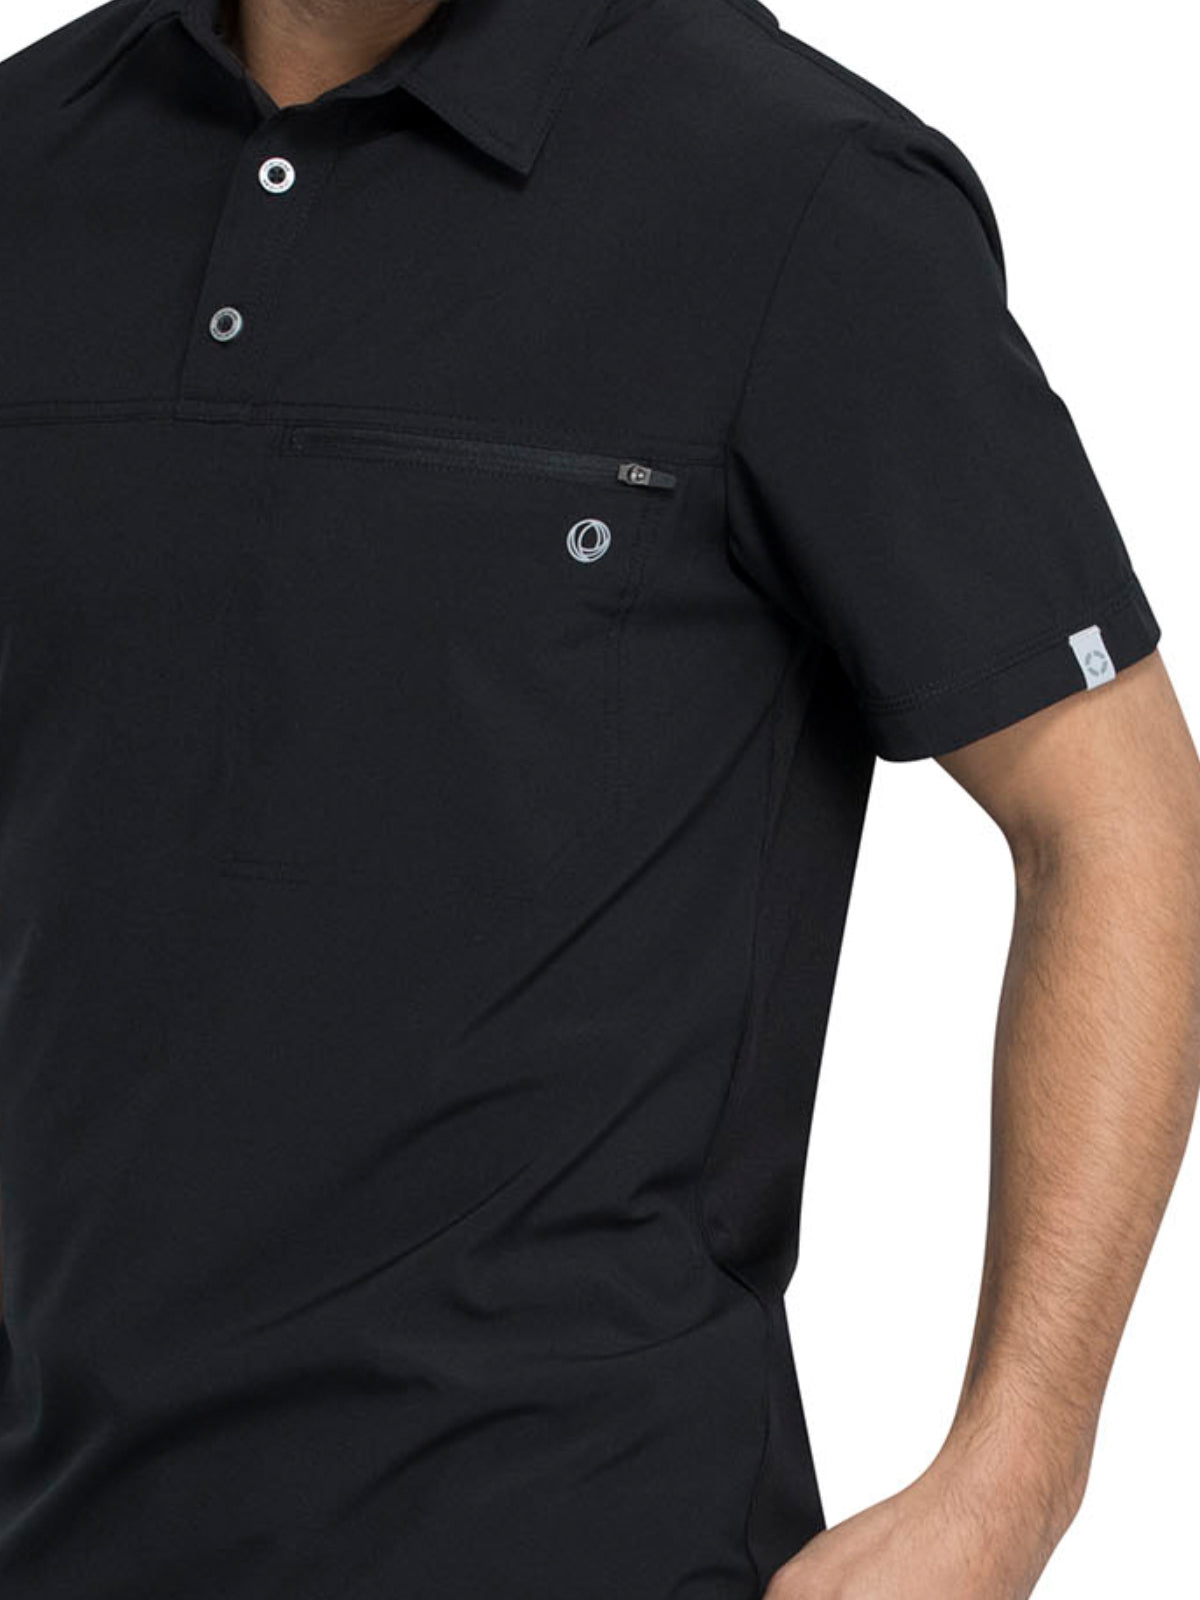 Men's 1-Pocket Tuckable Zipper Polo Top